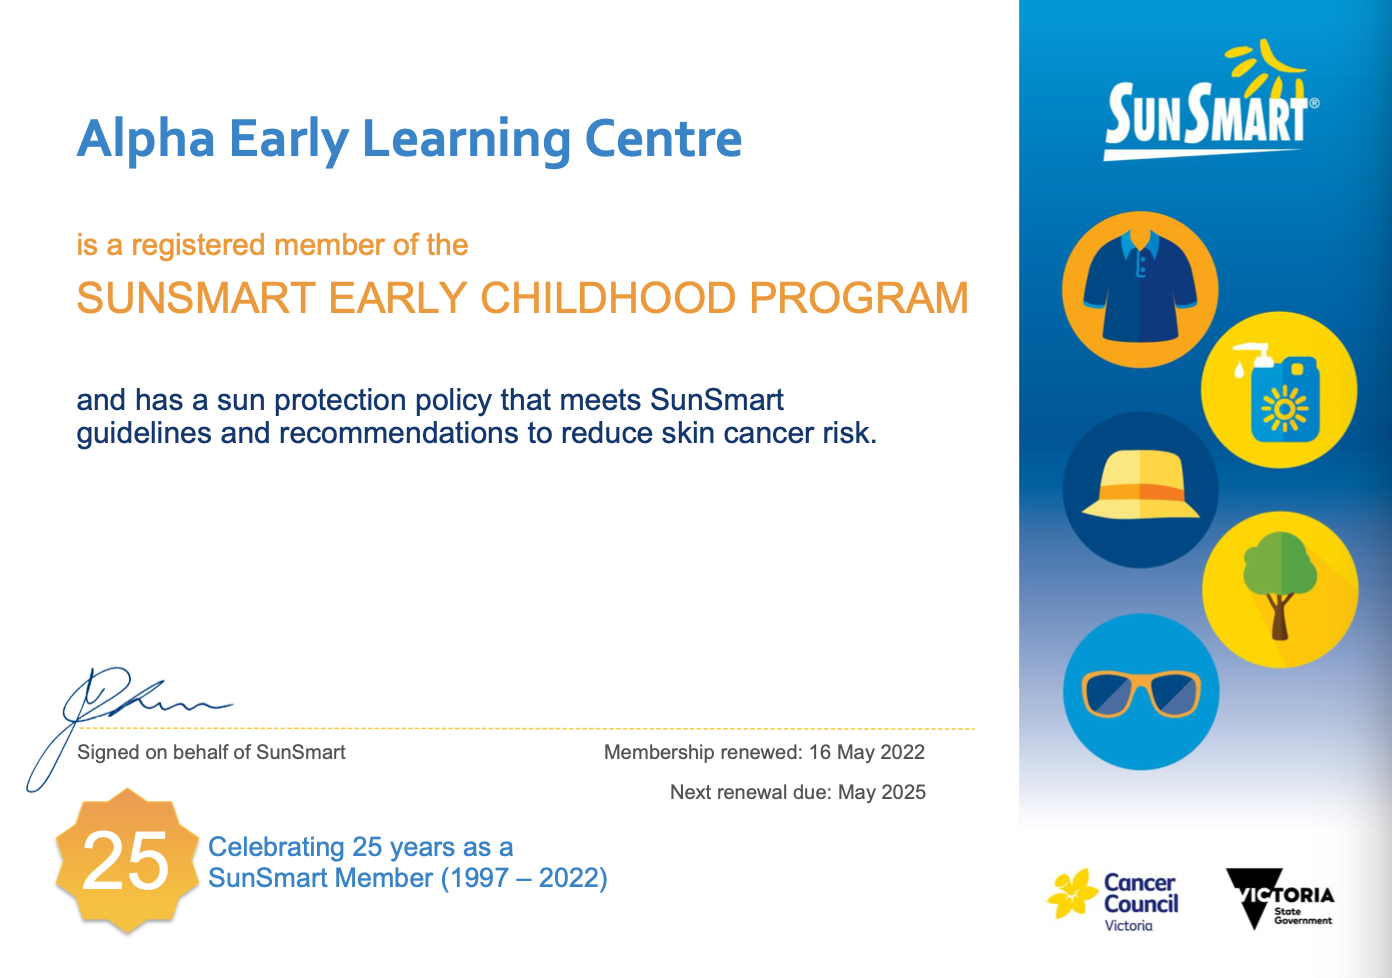 SunSmart Early Childhood Program